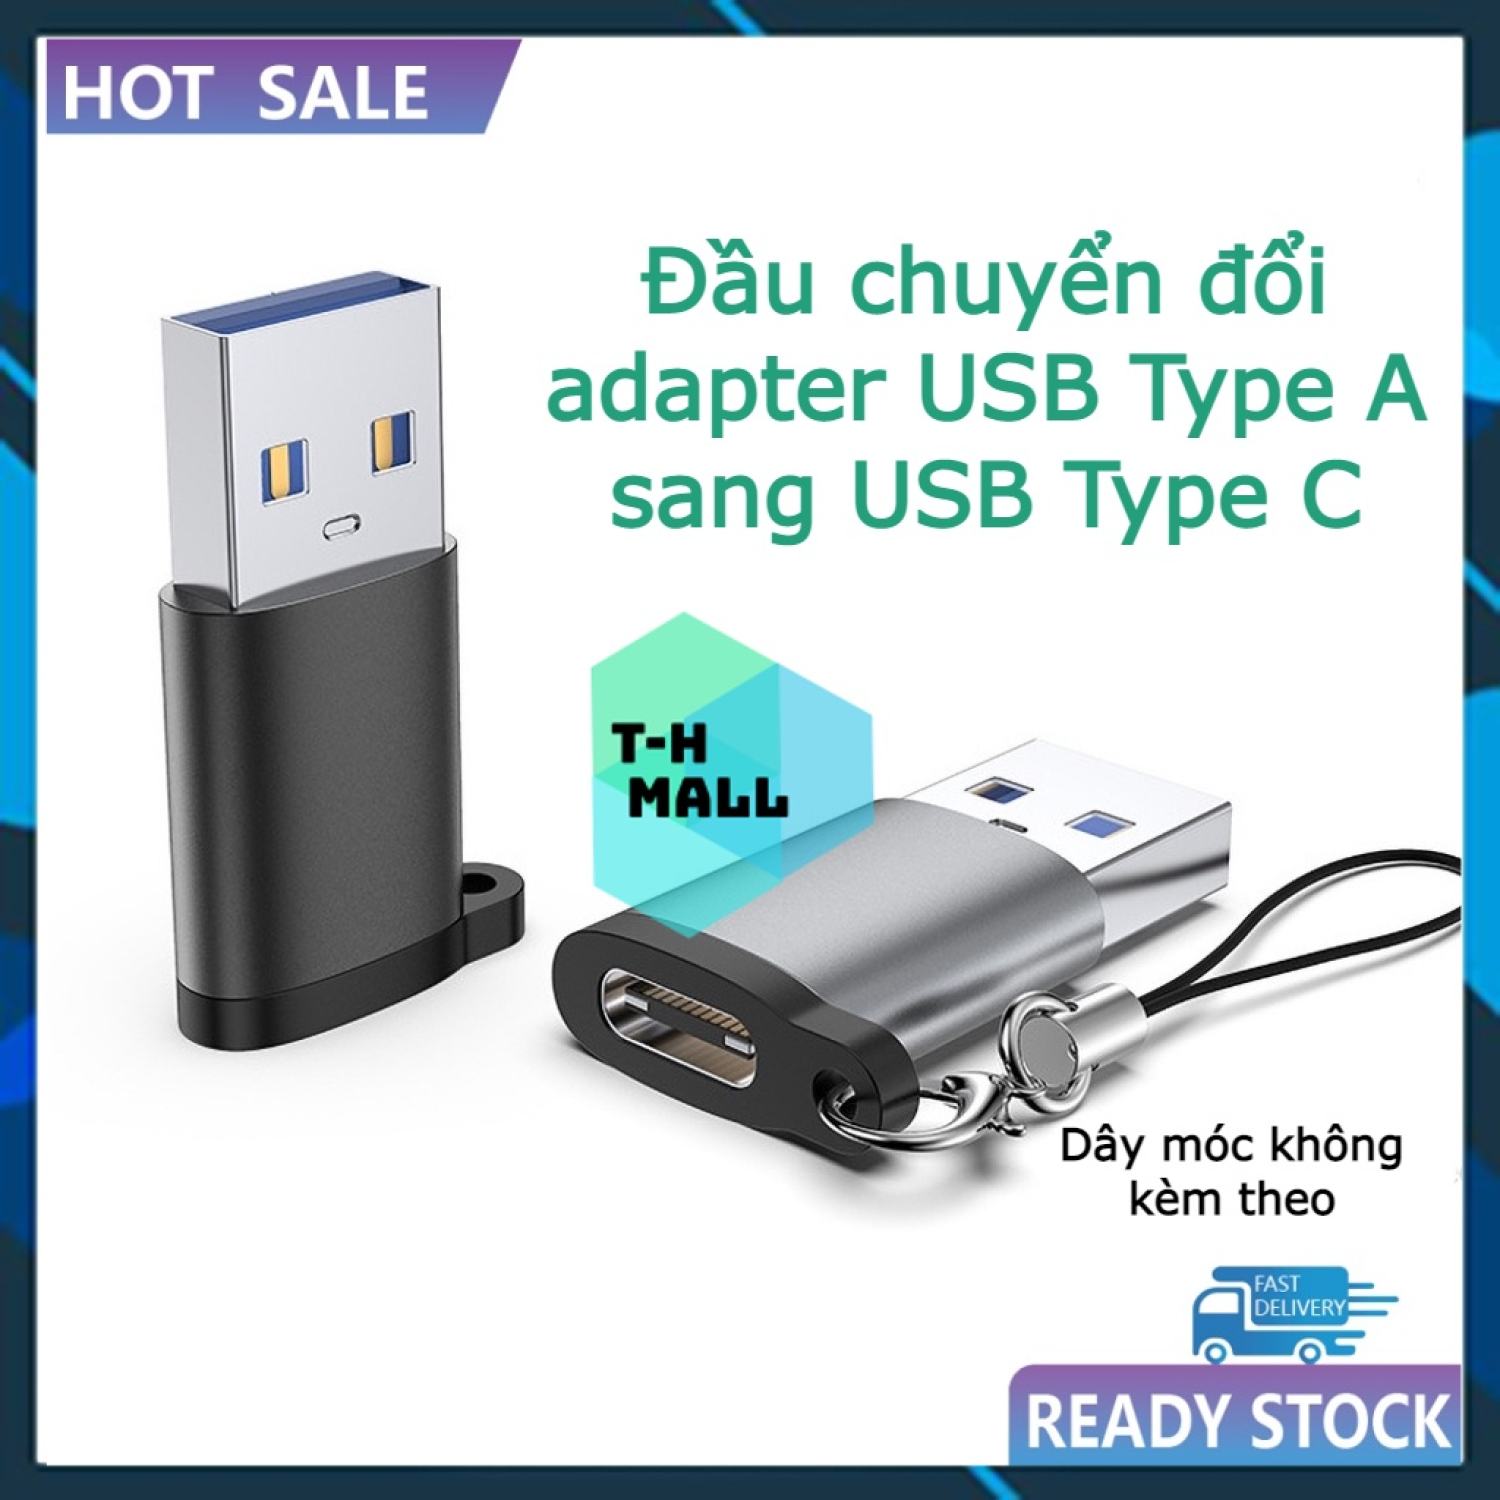 Đầu chuyển đổi adapter USB Type A sang USB Type C tốc độ cao